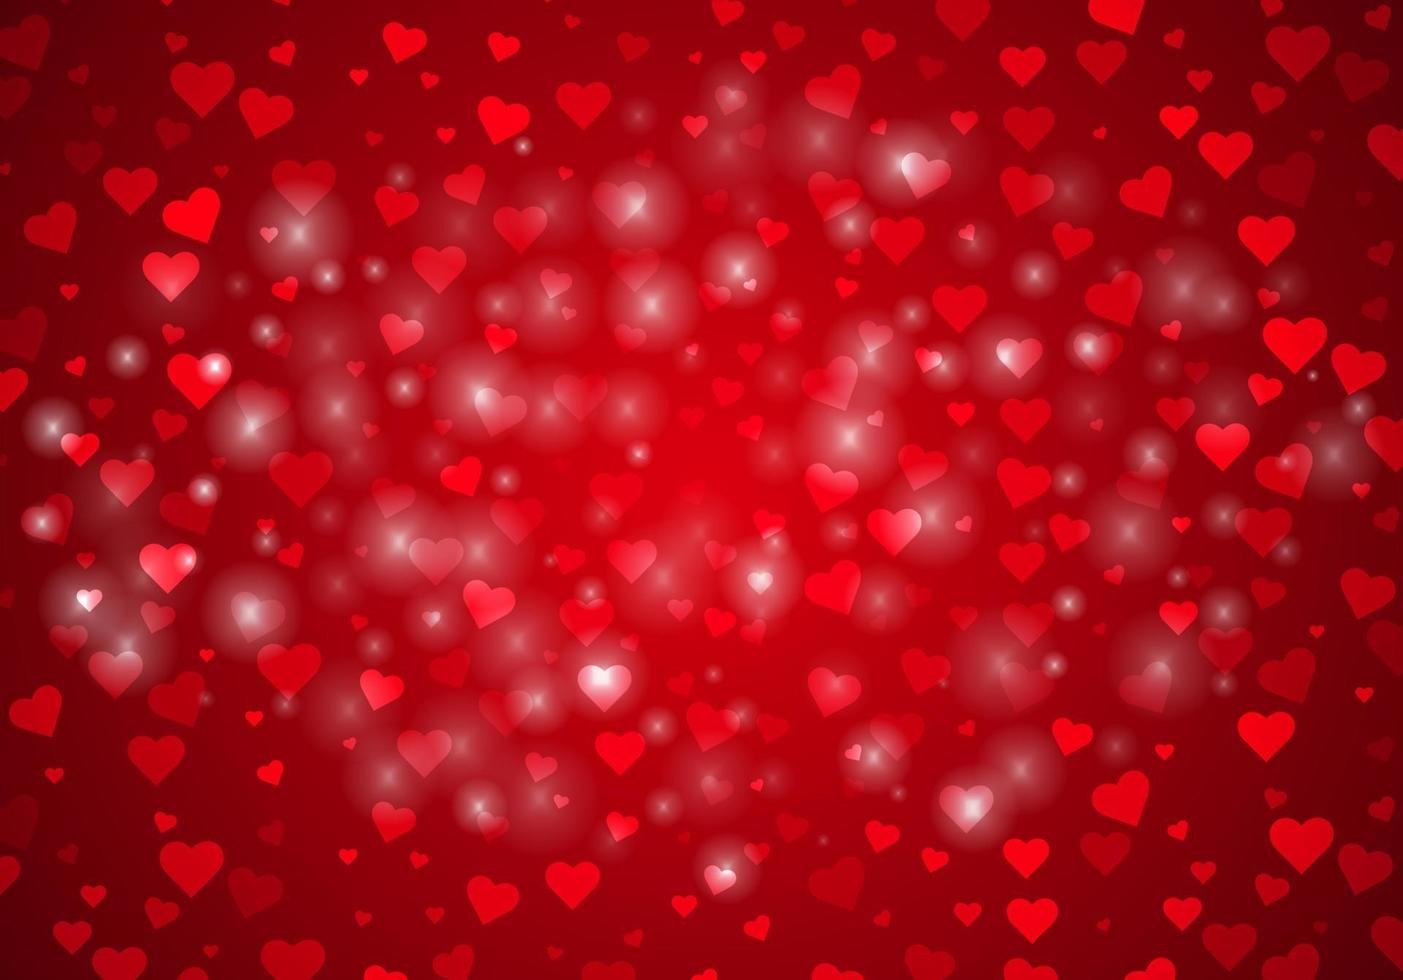 fundo vector vermelho brilhante para o dia dos namorados ou casamento com corações e cartão de fundo de férias Highlights.abstract.greeting. ilustração vetorial